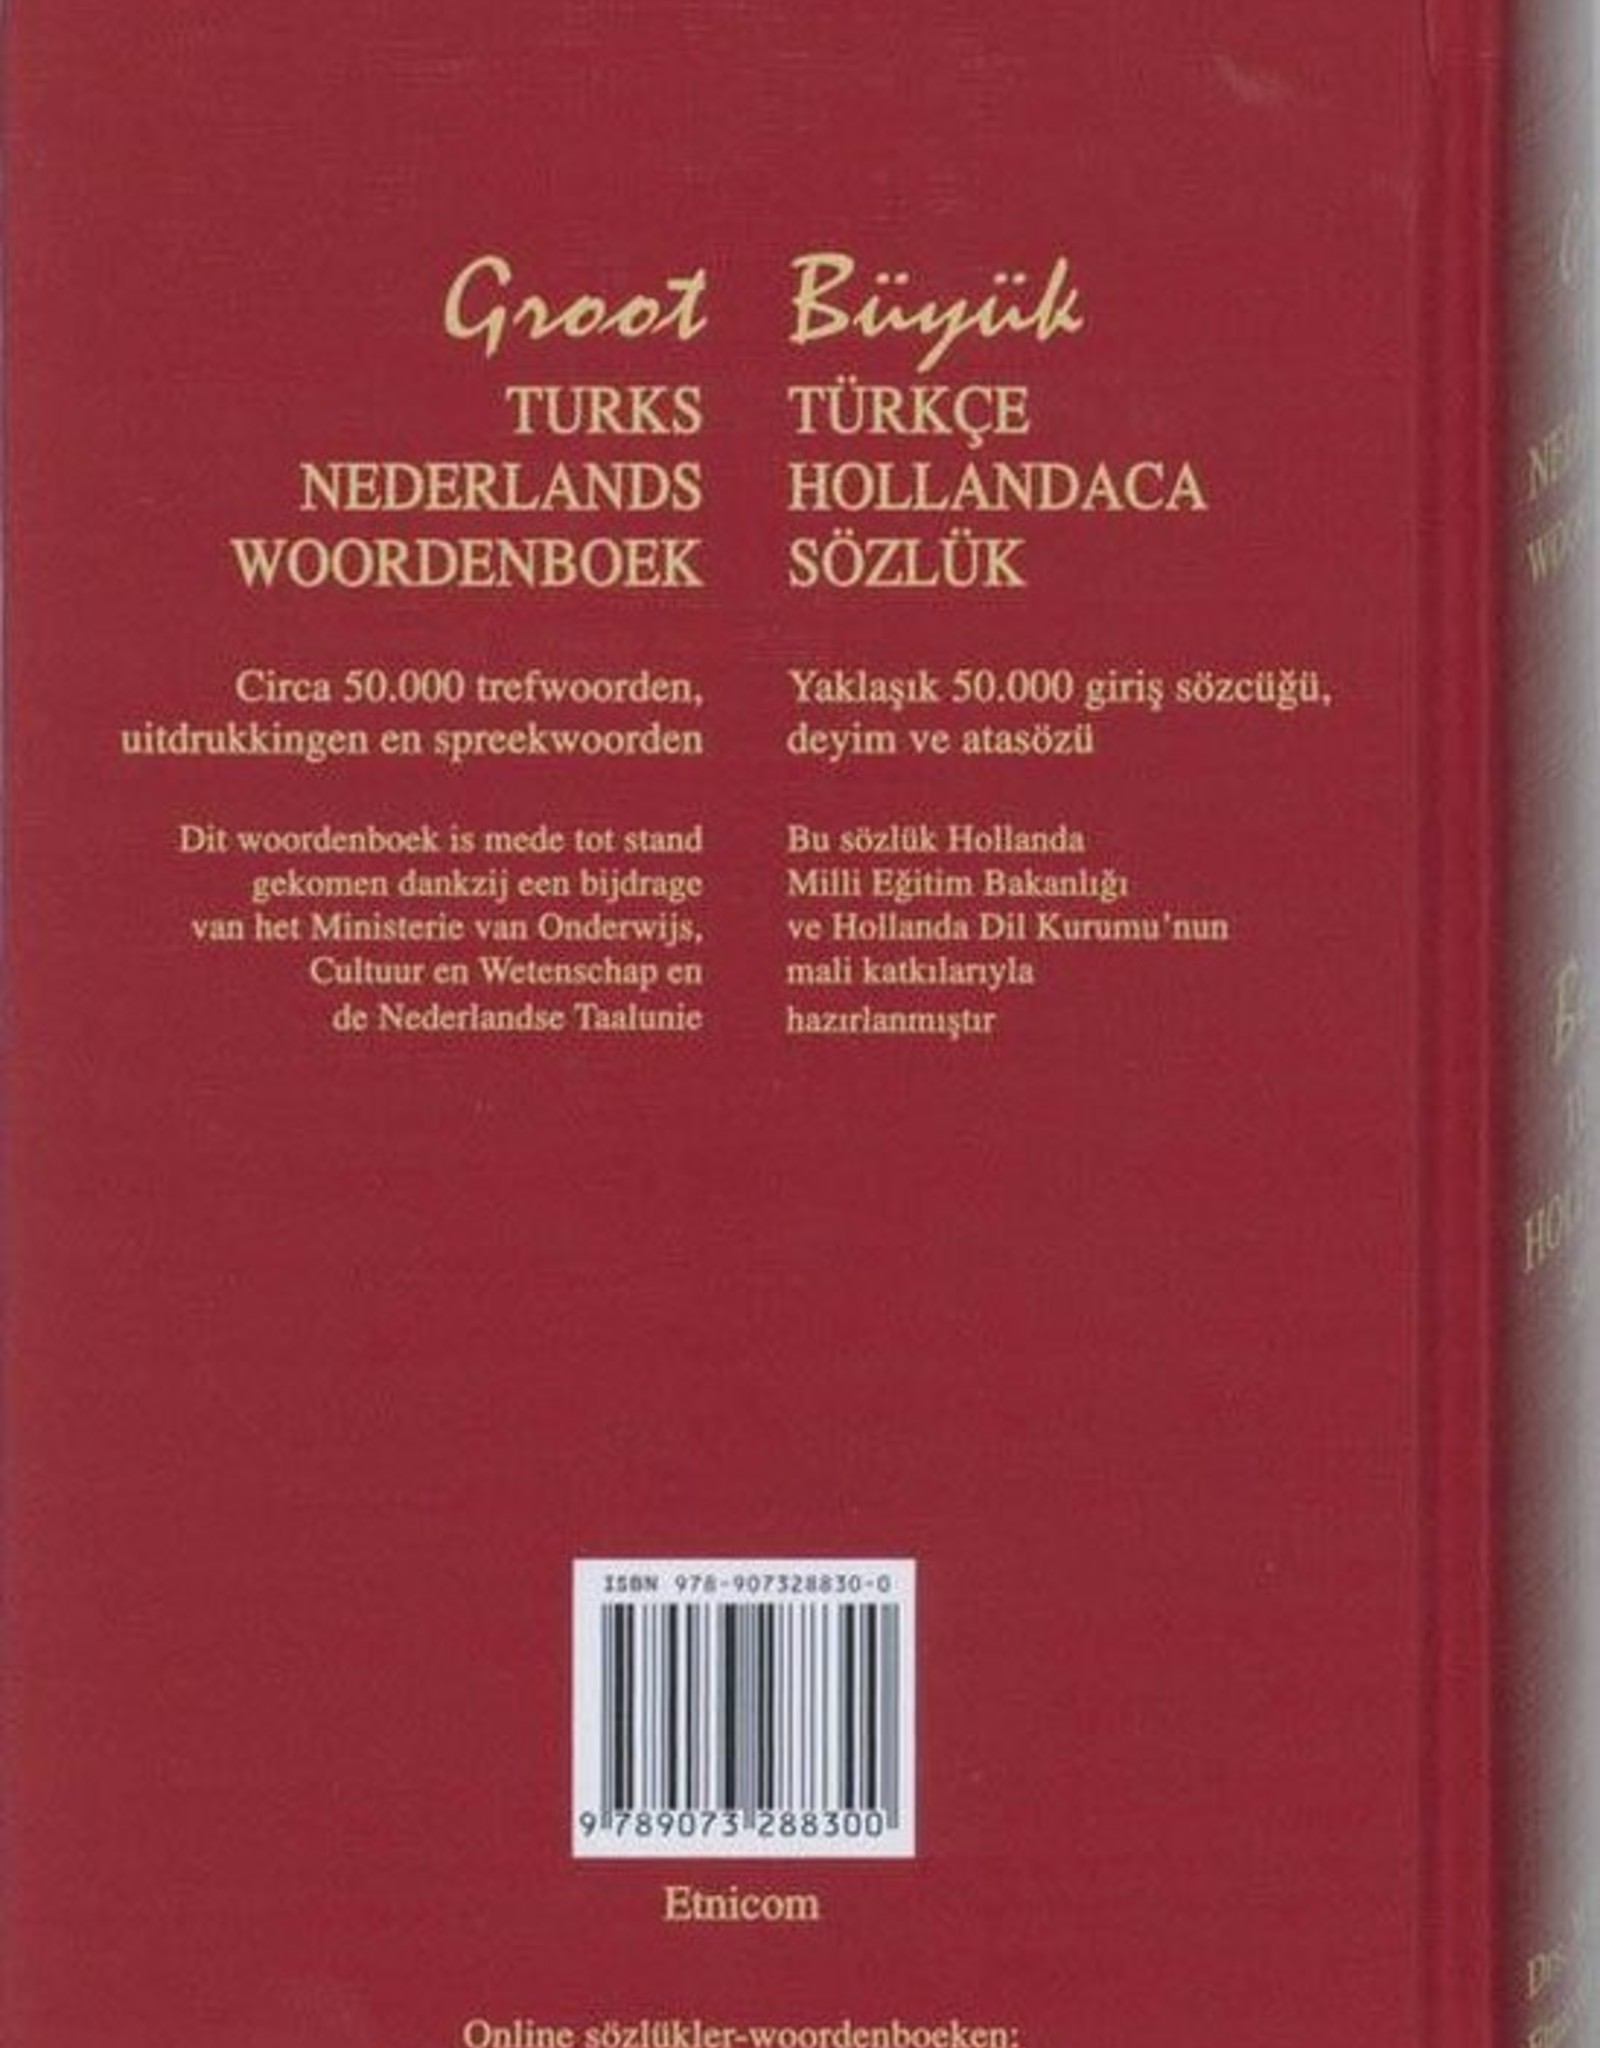 Sözlük Büyük Boy Groot Turks - Nederlands Woordenboek